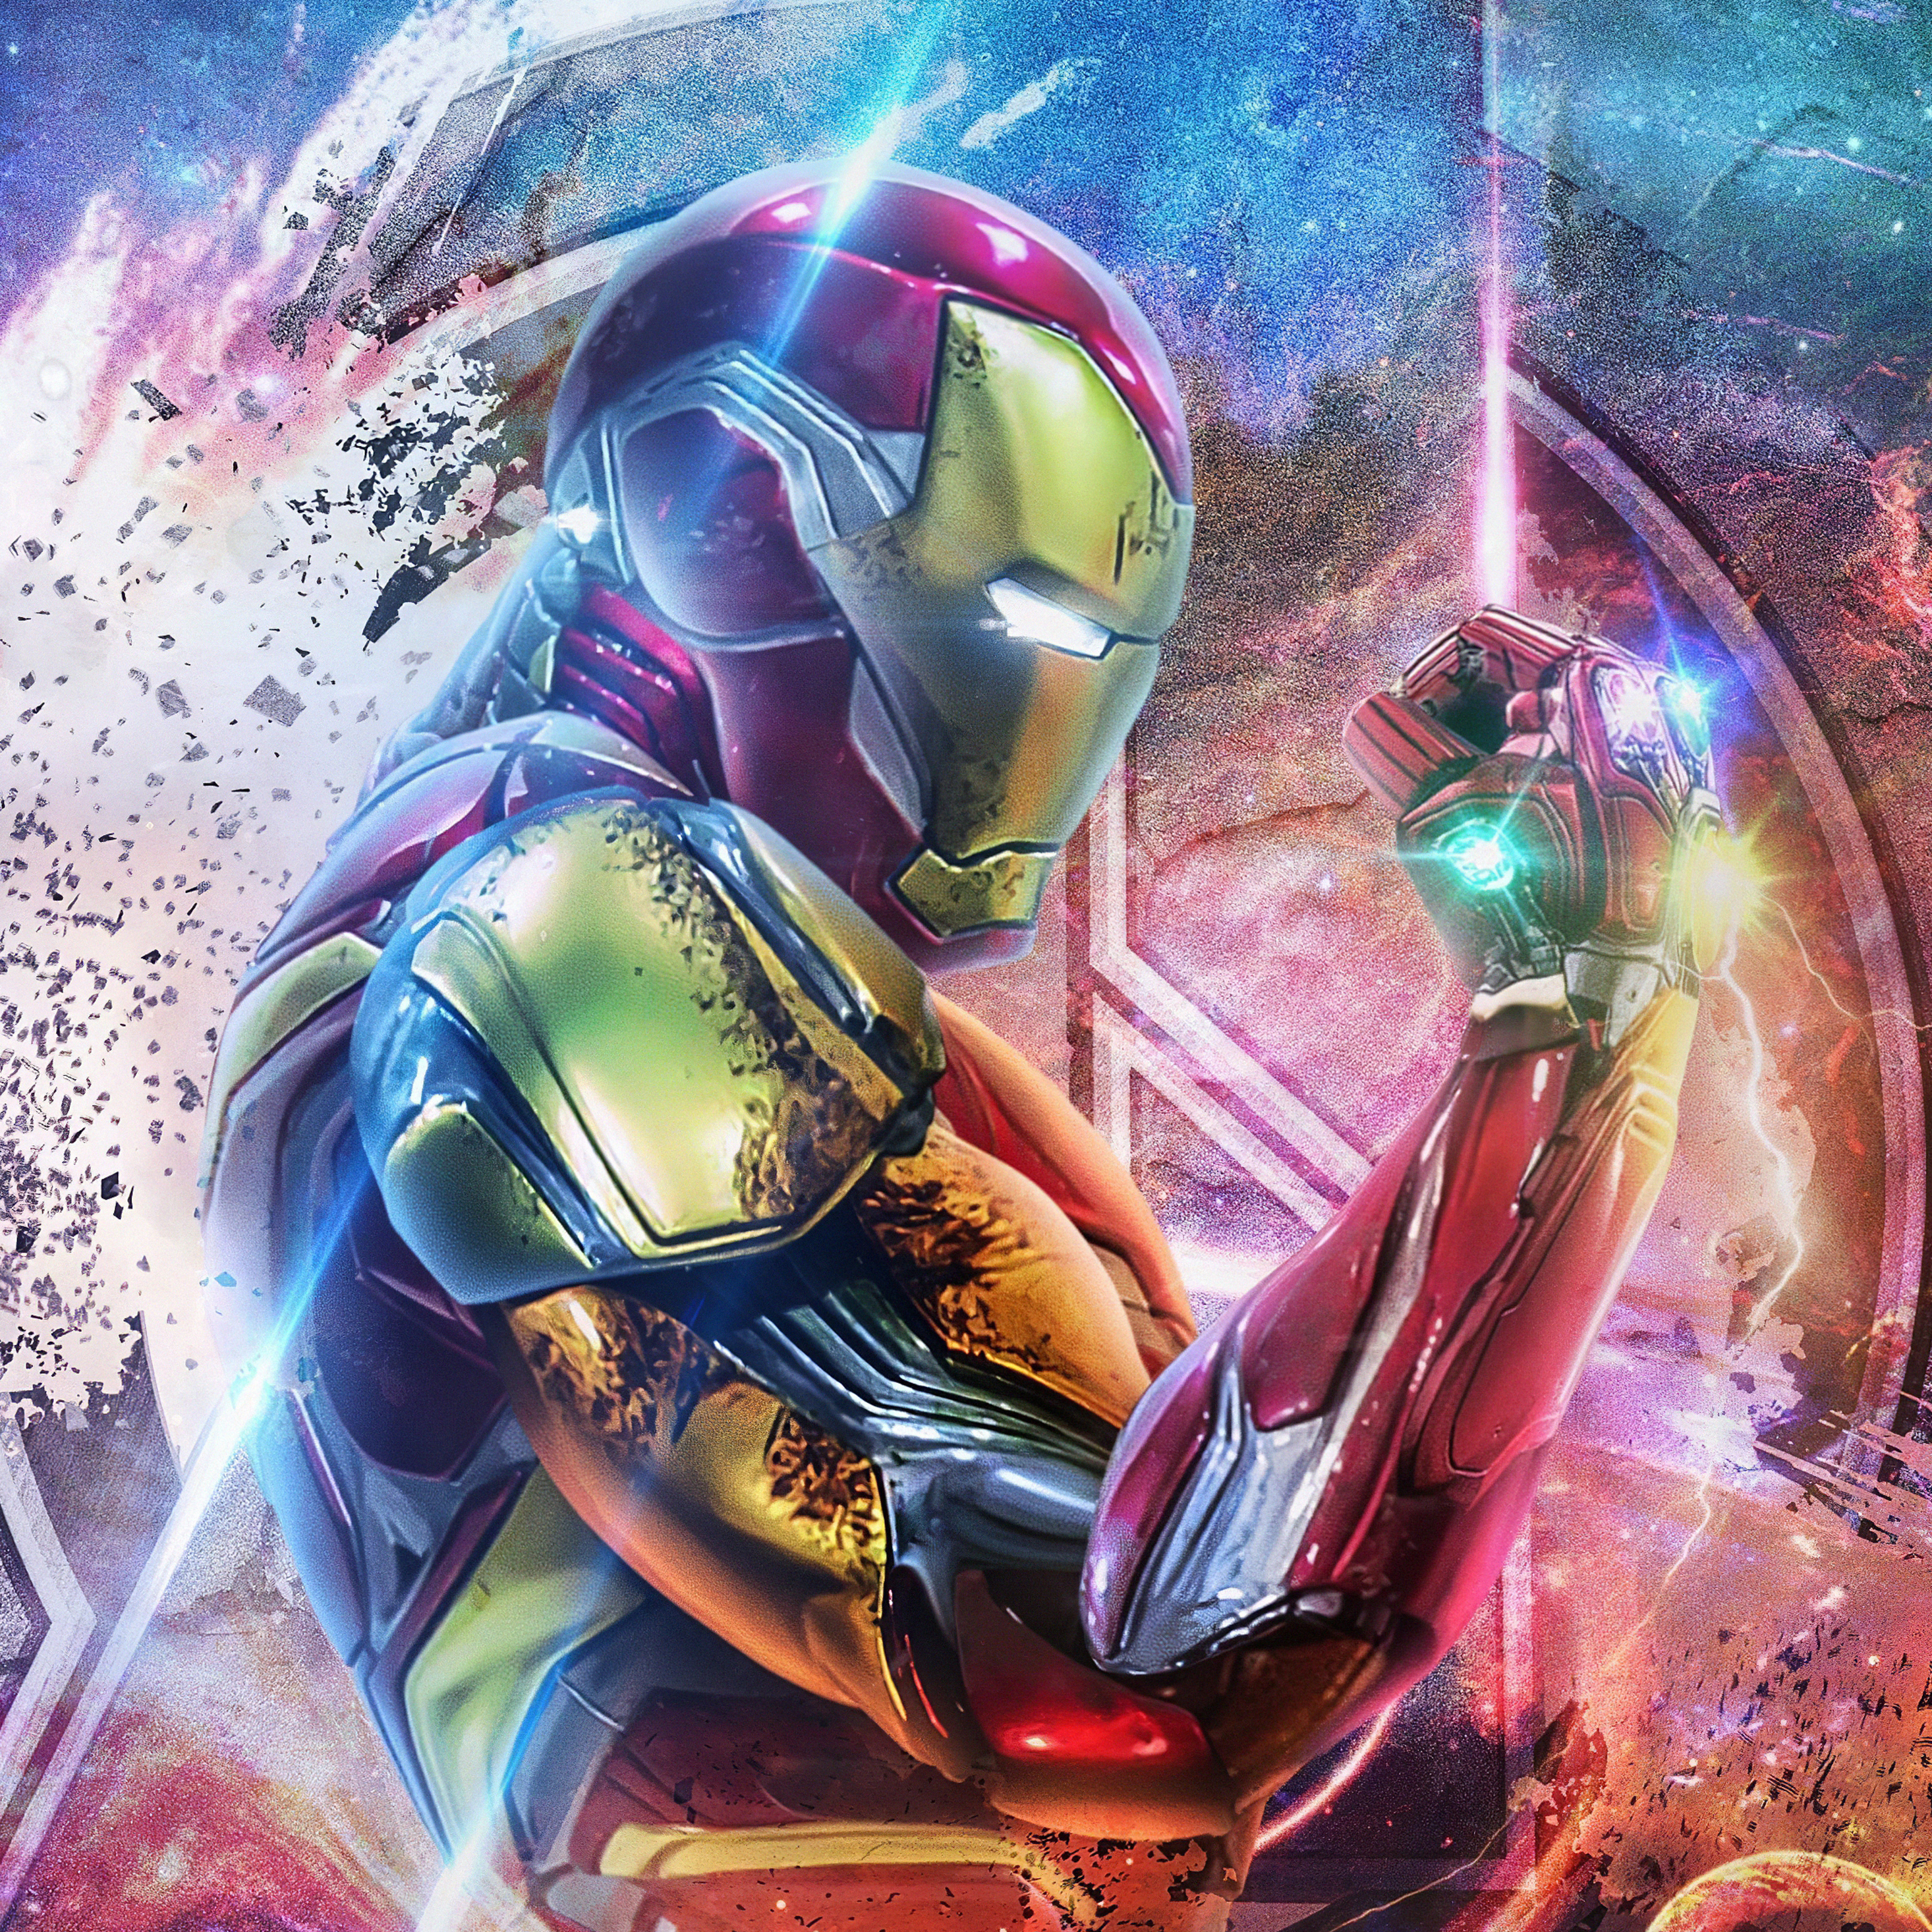 Avengers Endgame Iron Man 4k Ultra Hd Wallpapers For ...